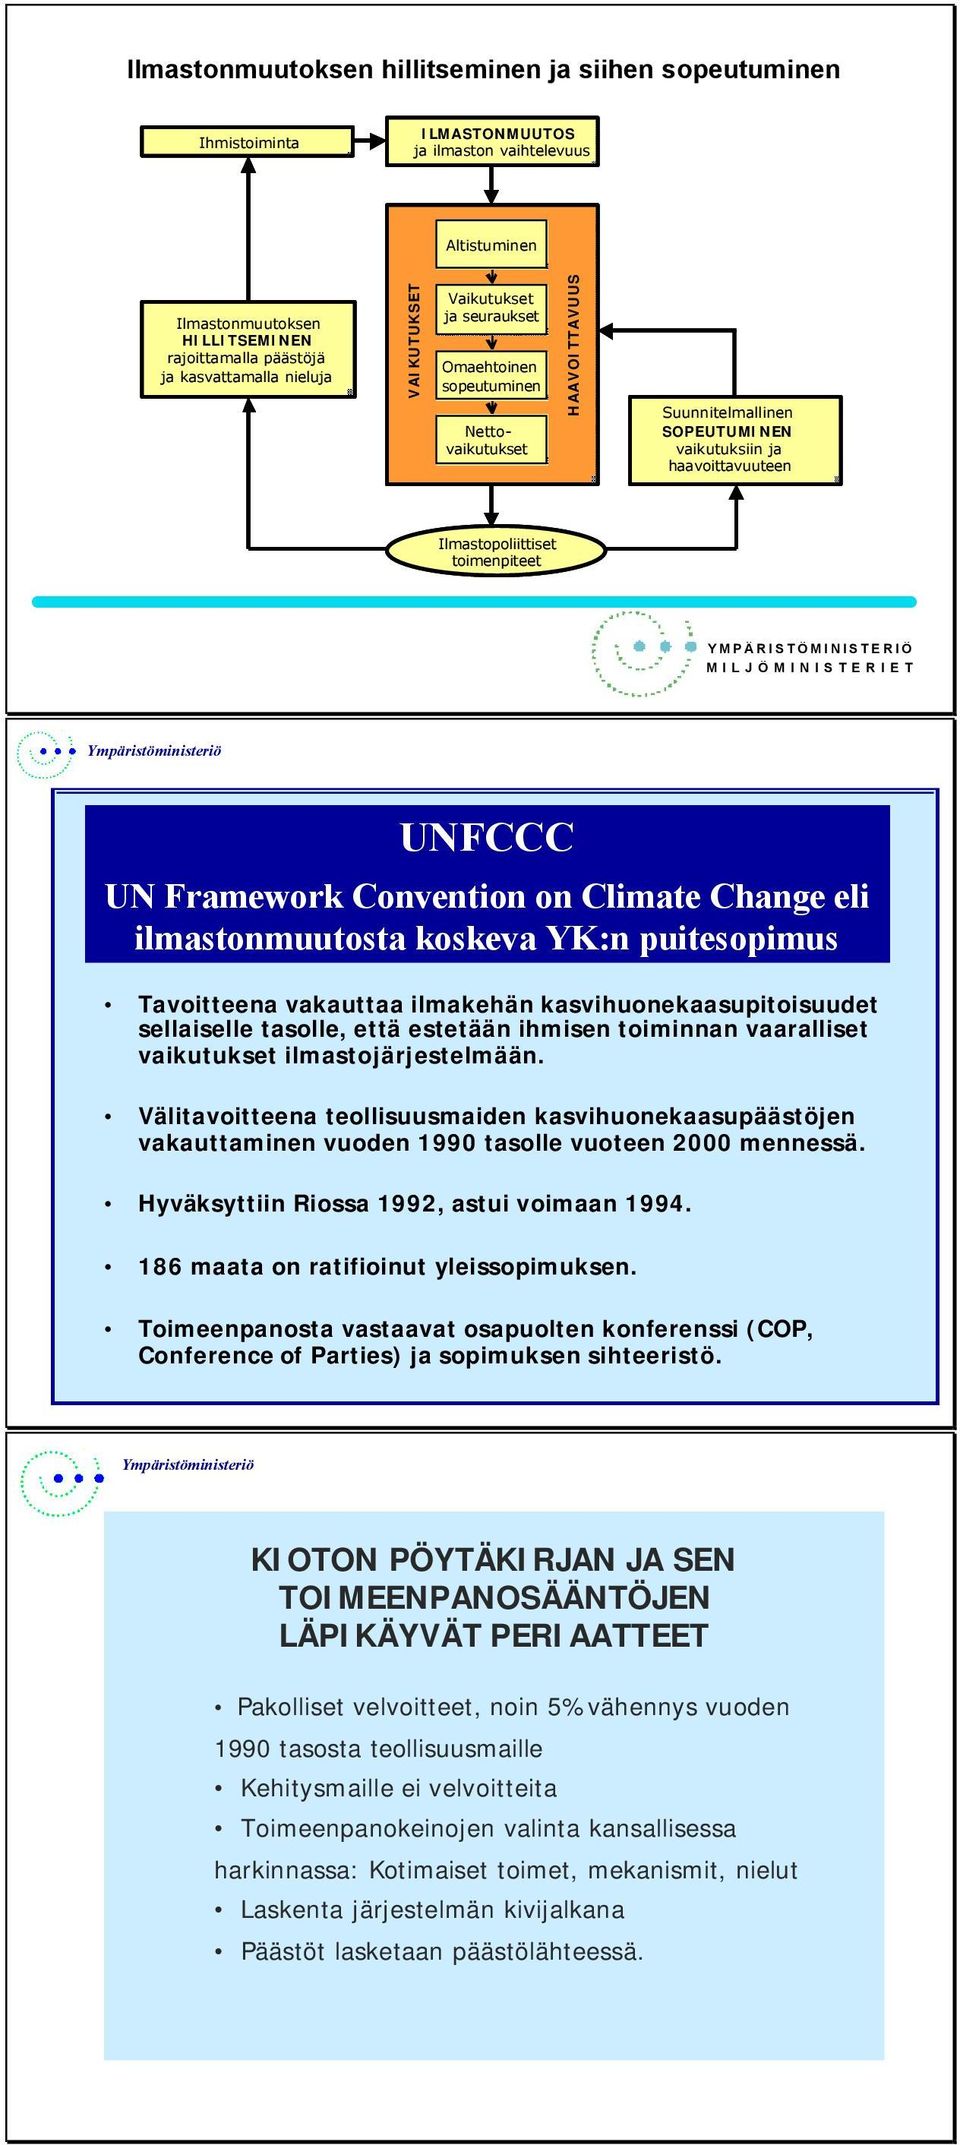 YMPÄRISTÖMINISTERIÖ MILJÖMINISTERIET Ympäristöministeriö UNFCCC UN Framework Convention on Climate Change eli ilmastonmuutosta koskeva YK:n puitesopimus Tavoitteena vakauttaa ilmakehän